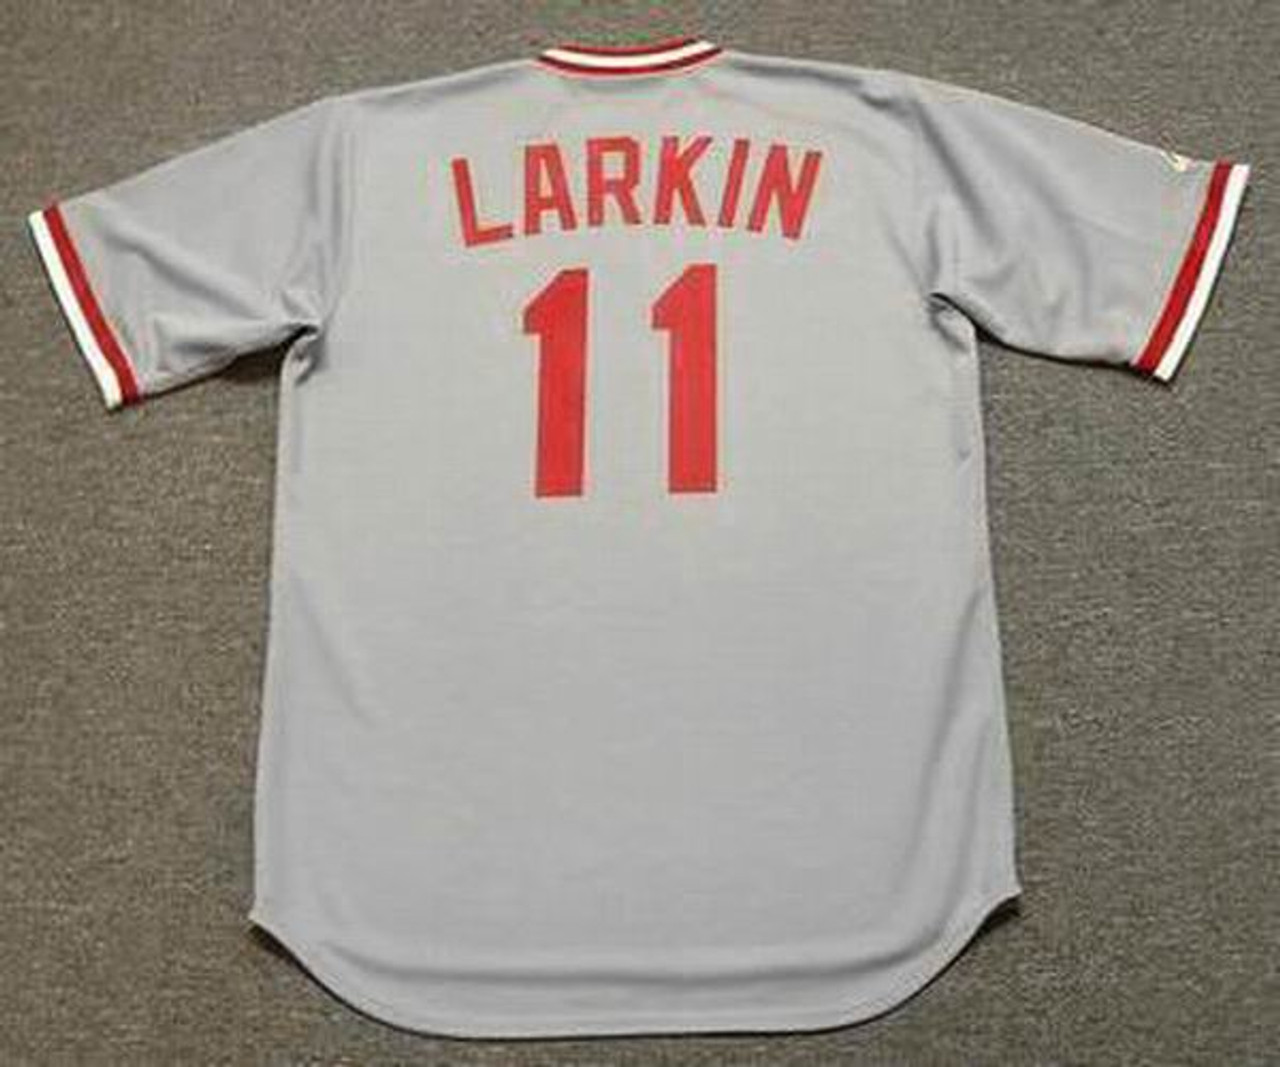 Barry Larkin Jersey - Cincinnati Reds 1990 Home Cooperstown